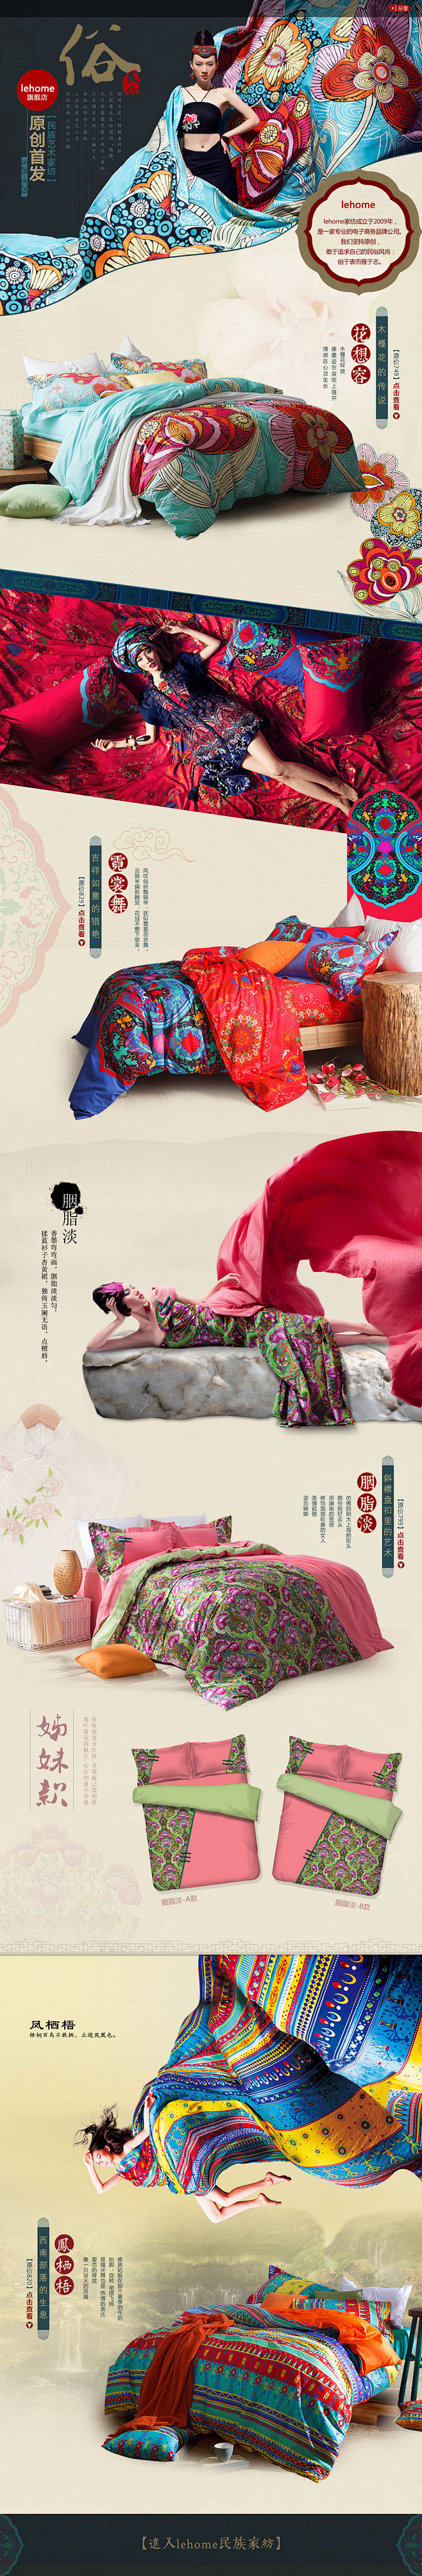 中国风 床上用品 排版 设计@cnk9采...